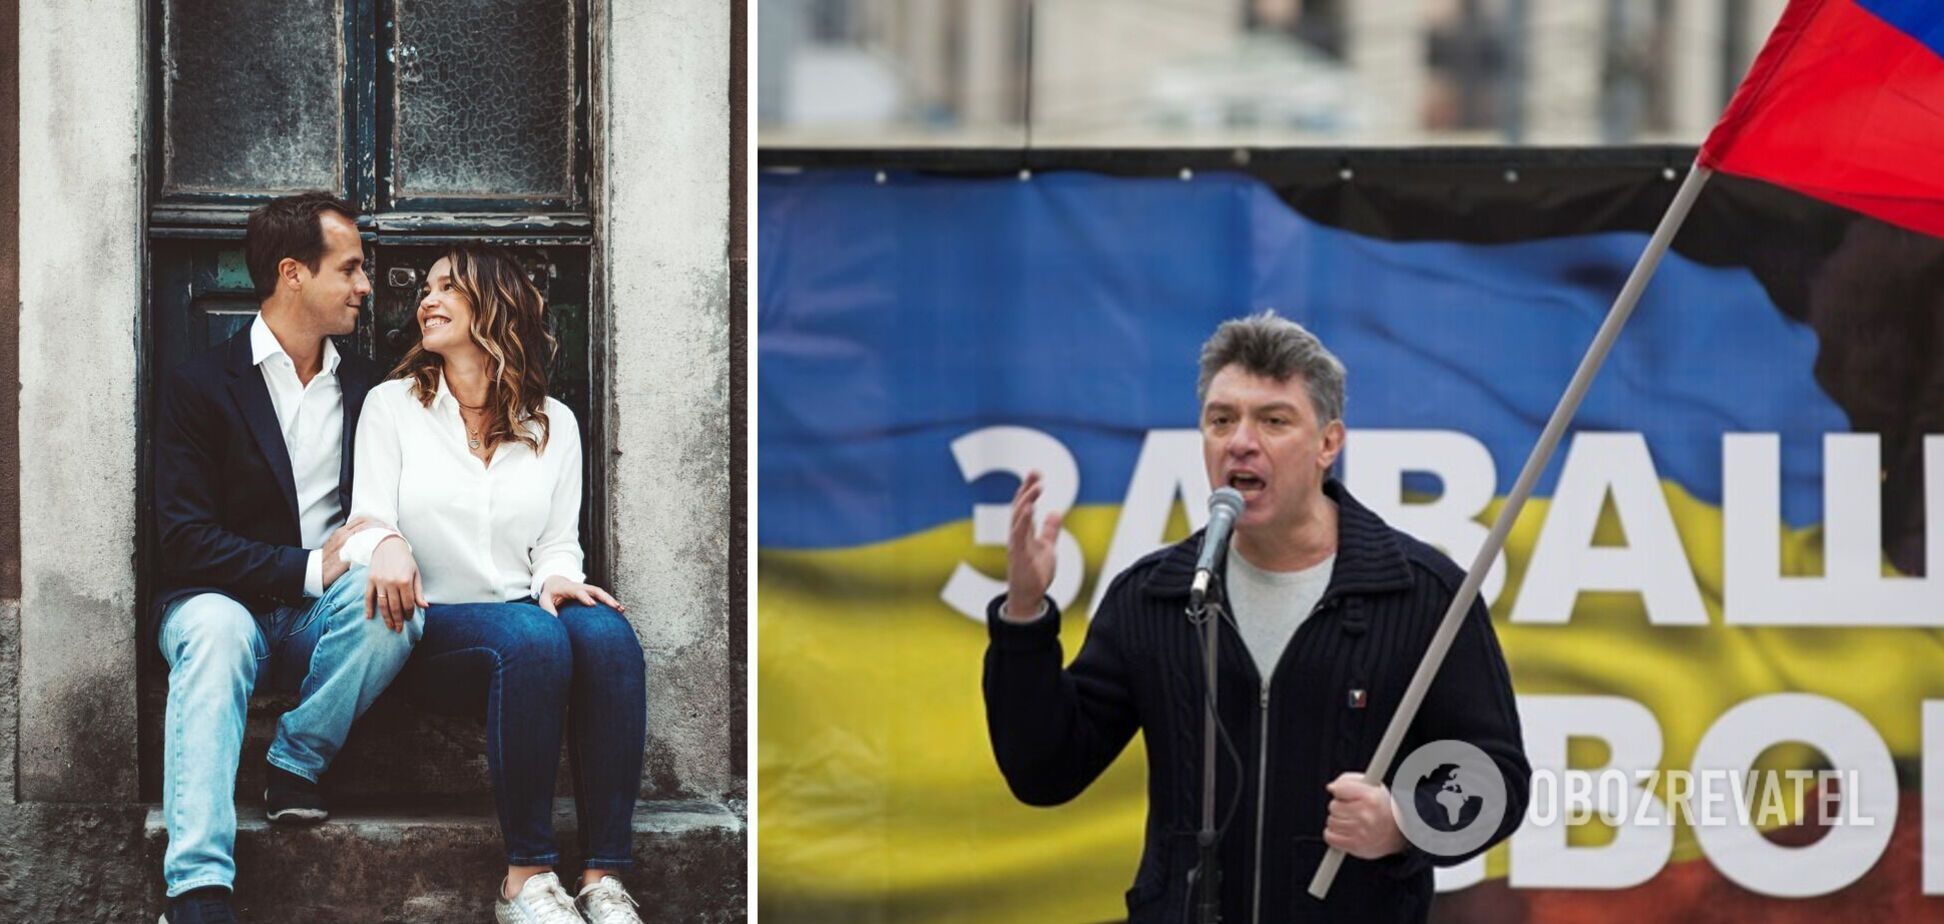 Дочь Немцова вышла замуж за россиянина, который поддерживает Украину. Фото